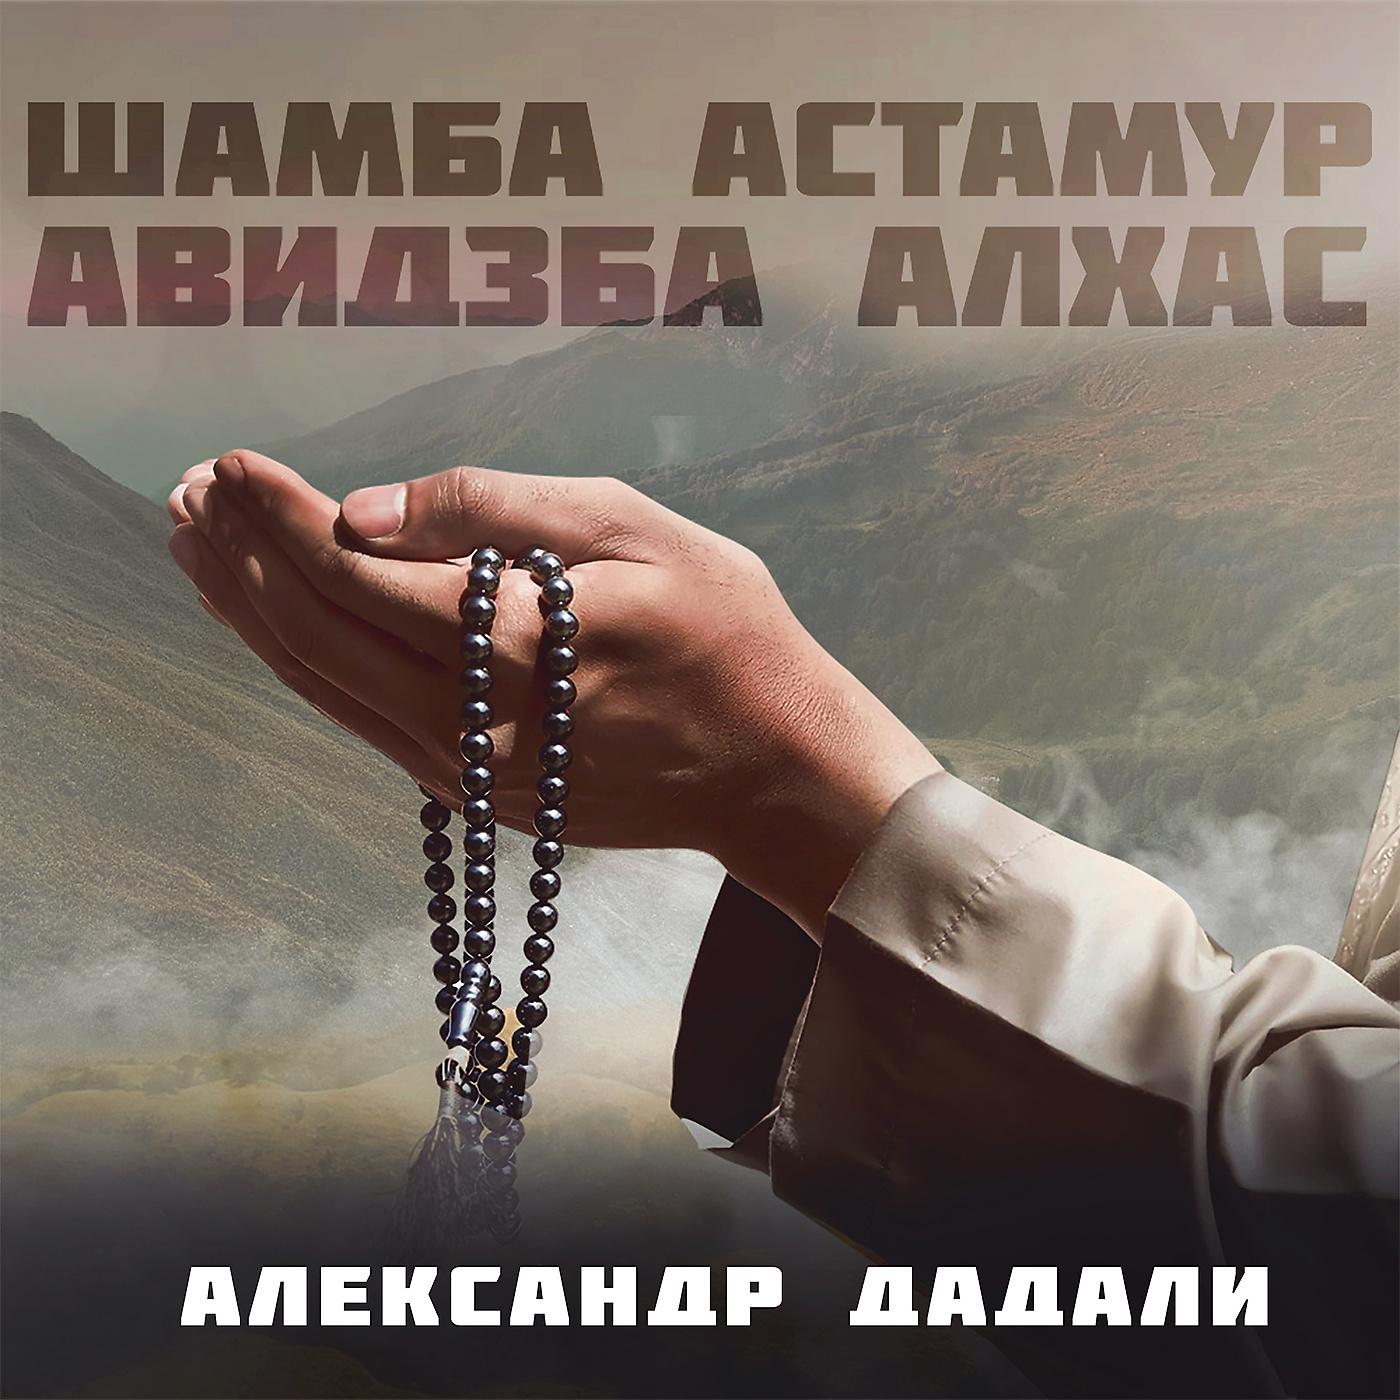 Постер альбома Шамба Астамур, Авидзба Алхас